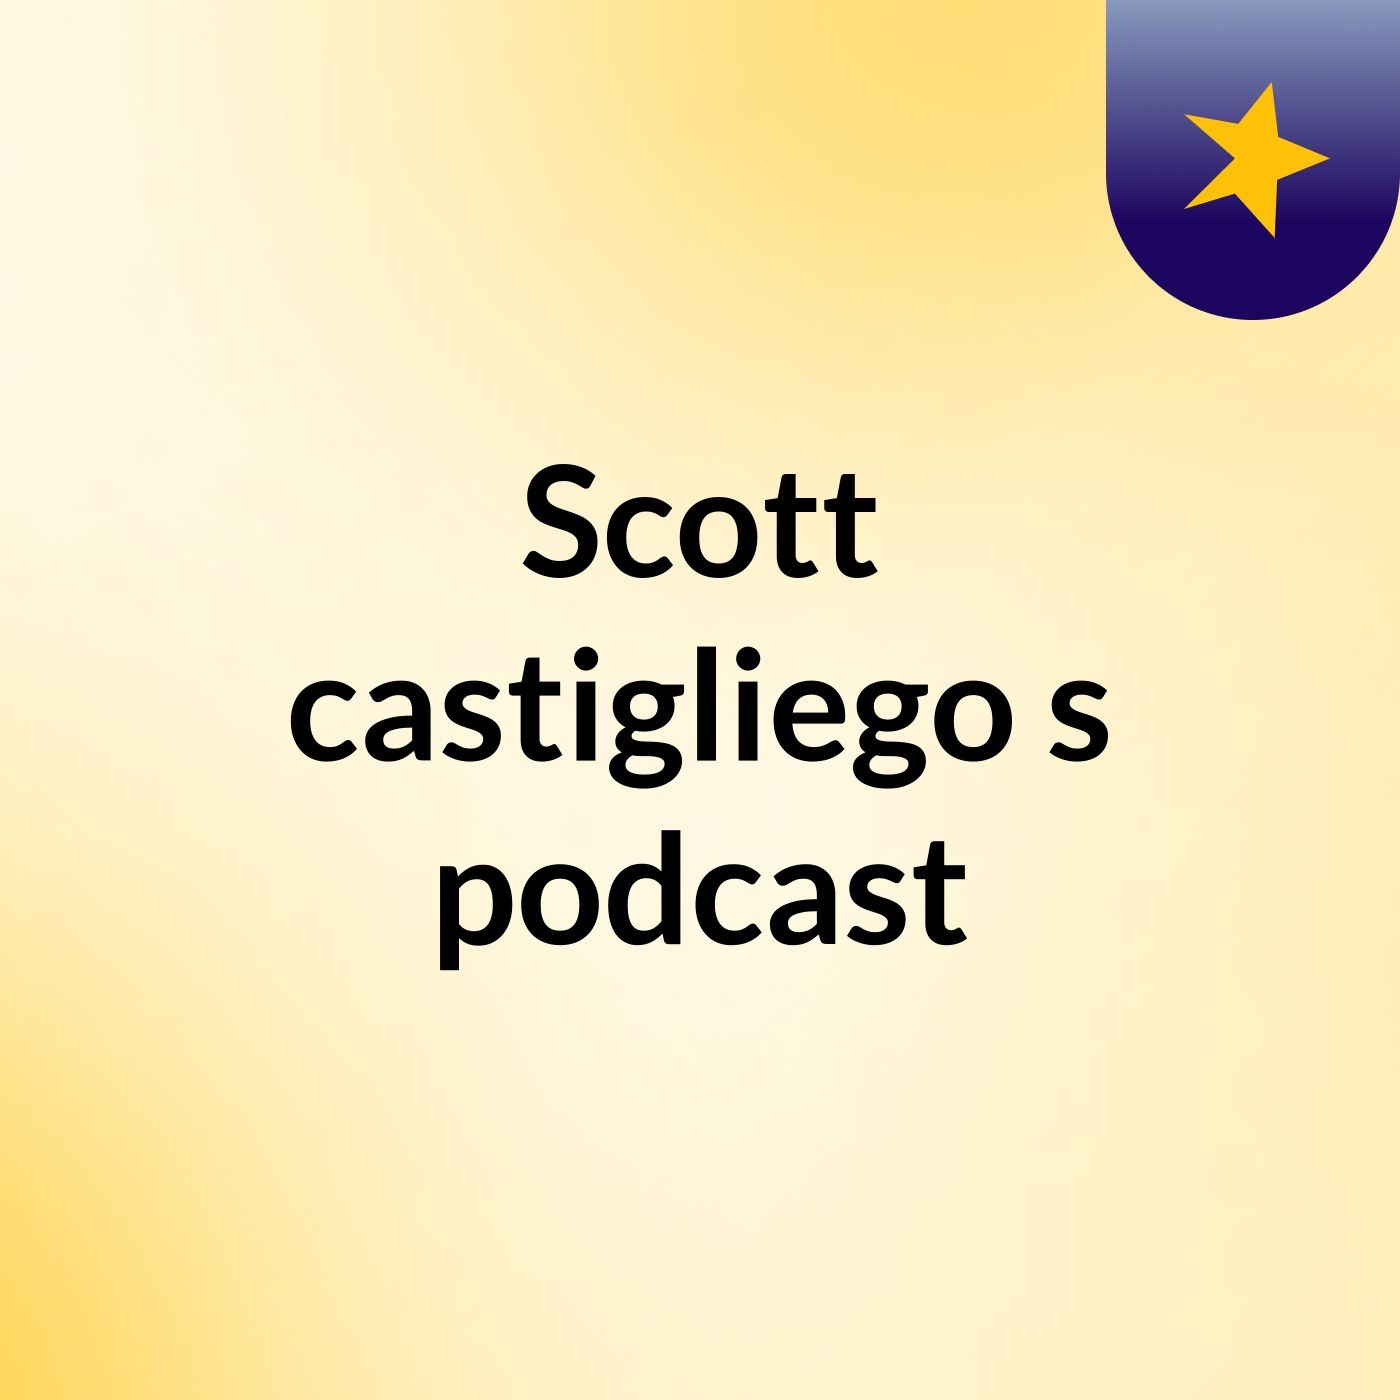 Episode 5 - Scott castigliego's podcast